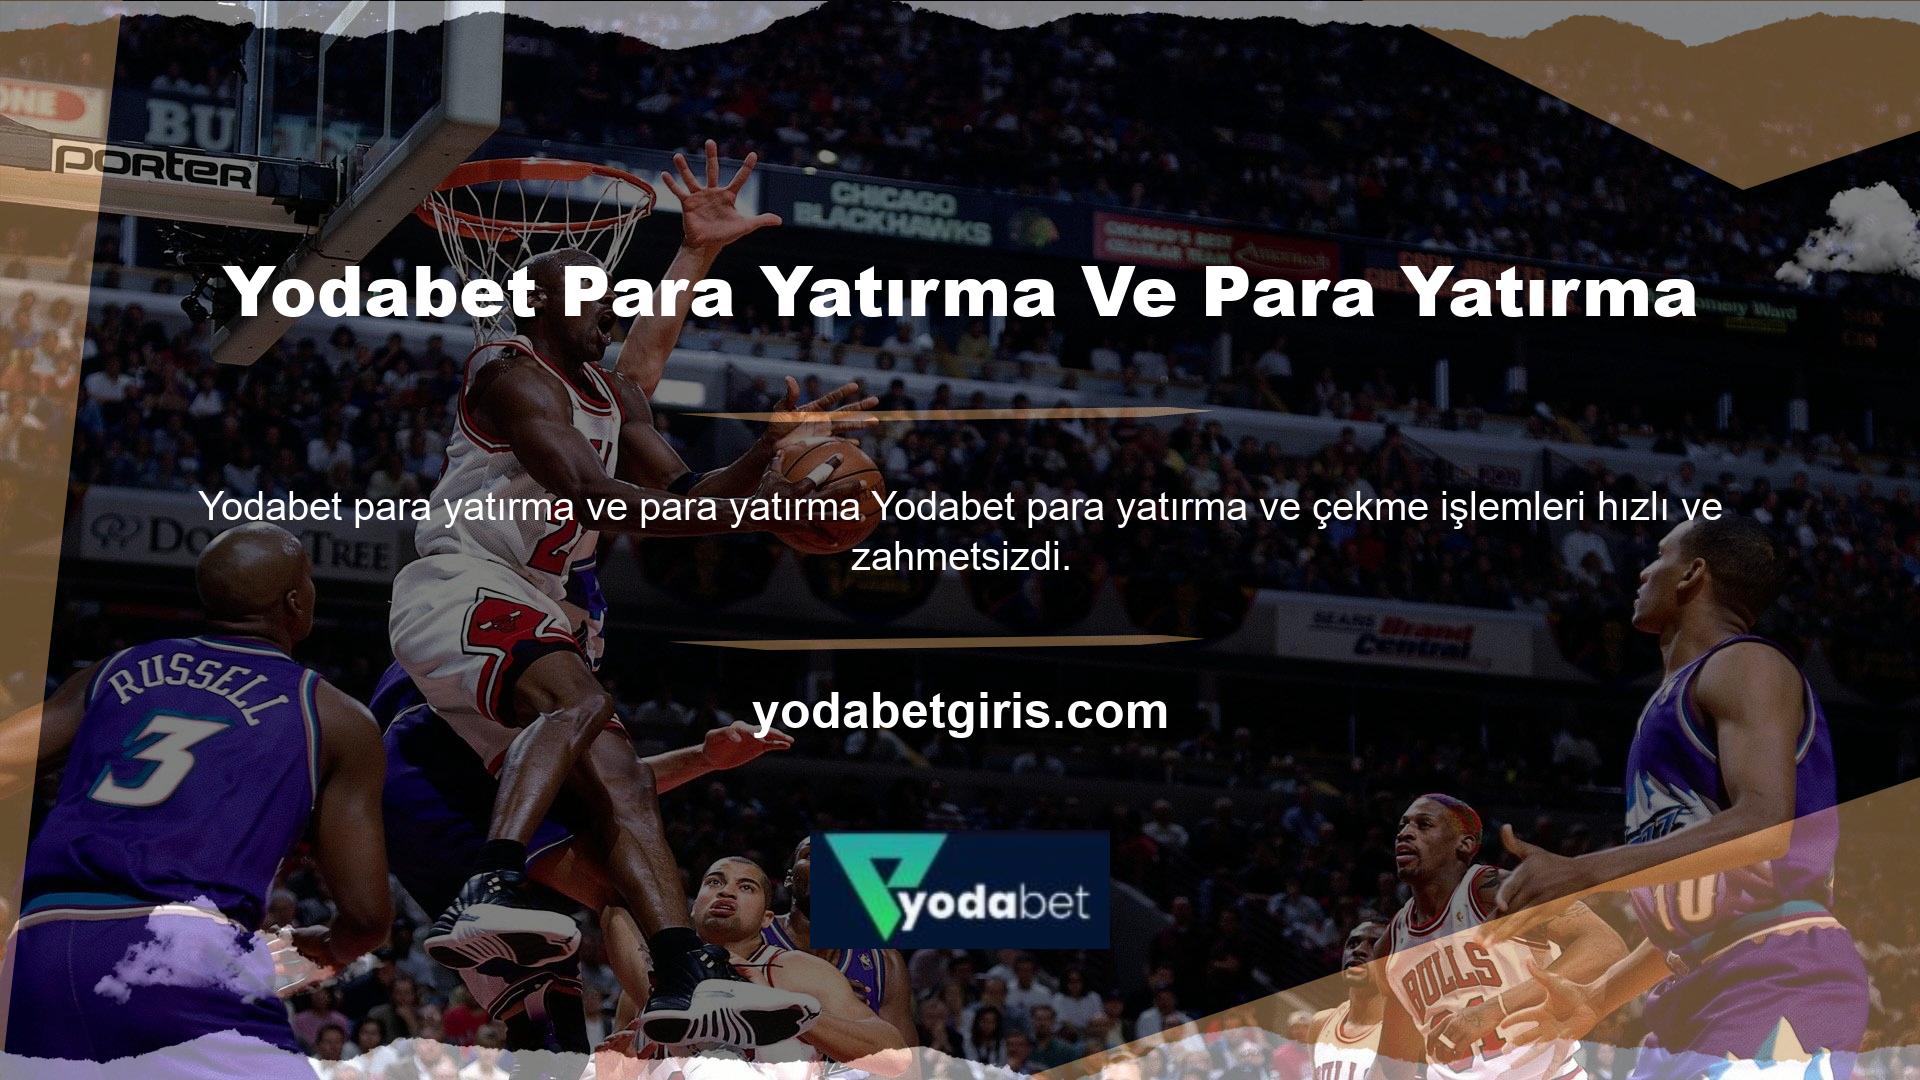 Yodabet casino'nun para yatırma ve para yatırma teknolojisi, en iyi canlı casino sitesini seçerken önemli bir faktördür